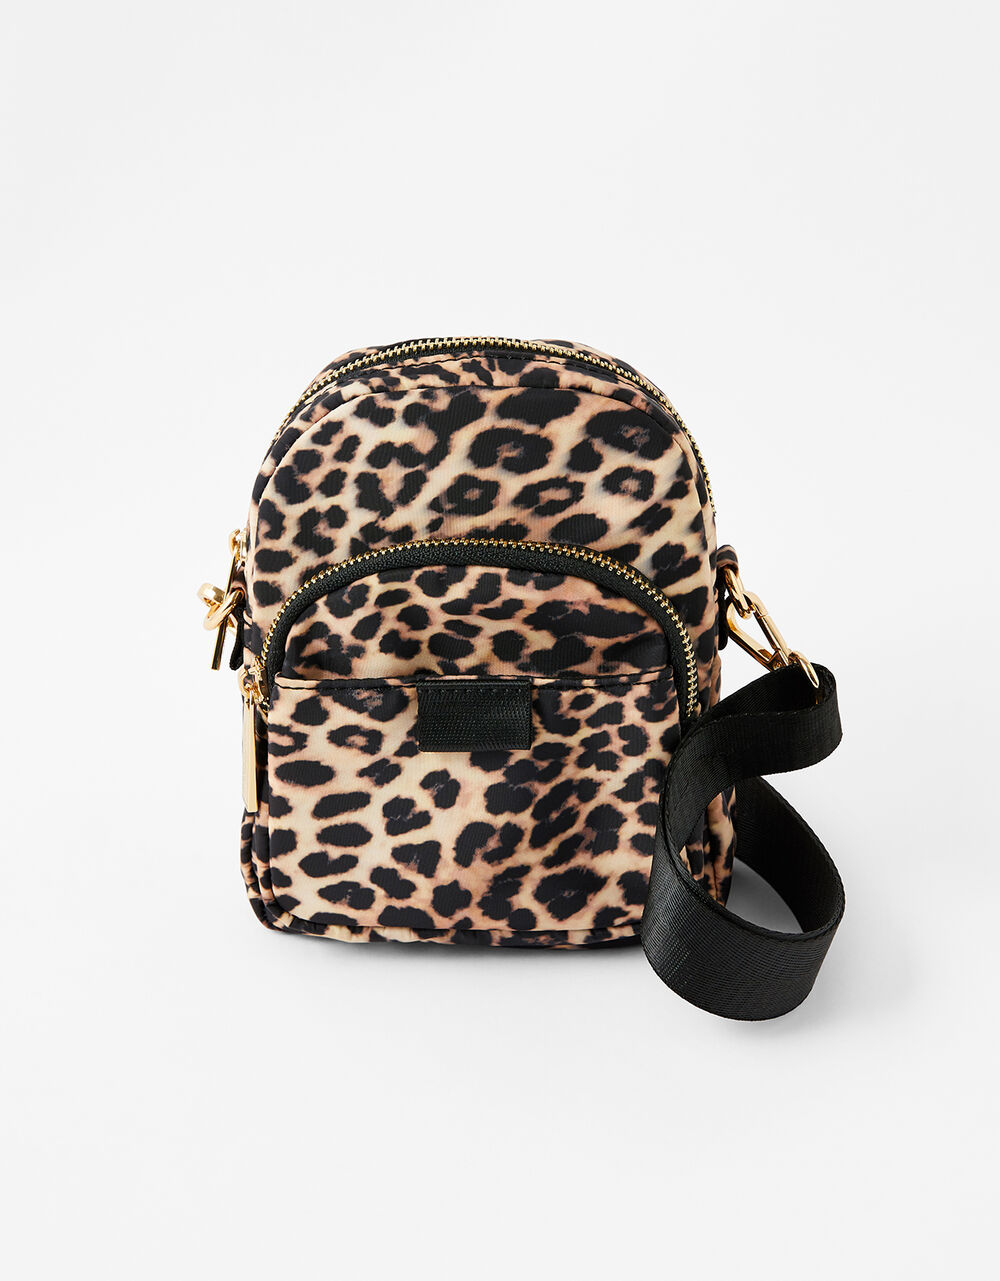 Leopard Print Cross-Body Bag | Cross-body bags | Accessorize UK